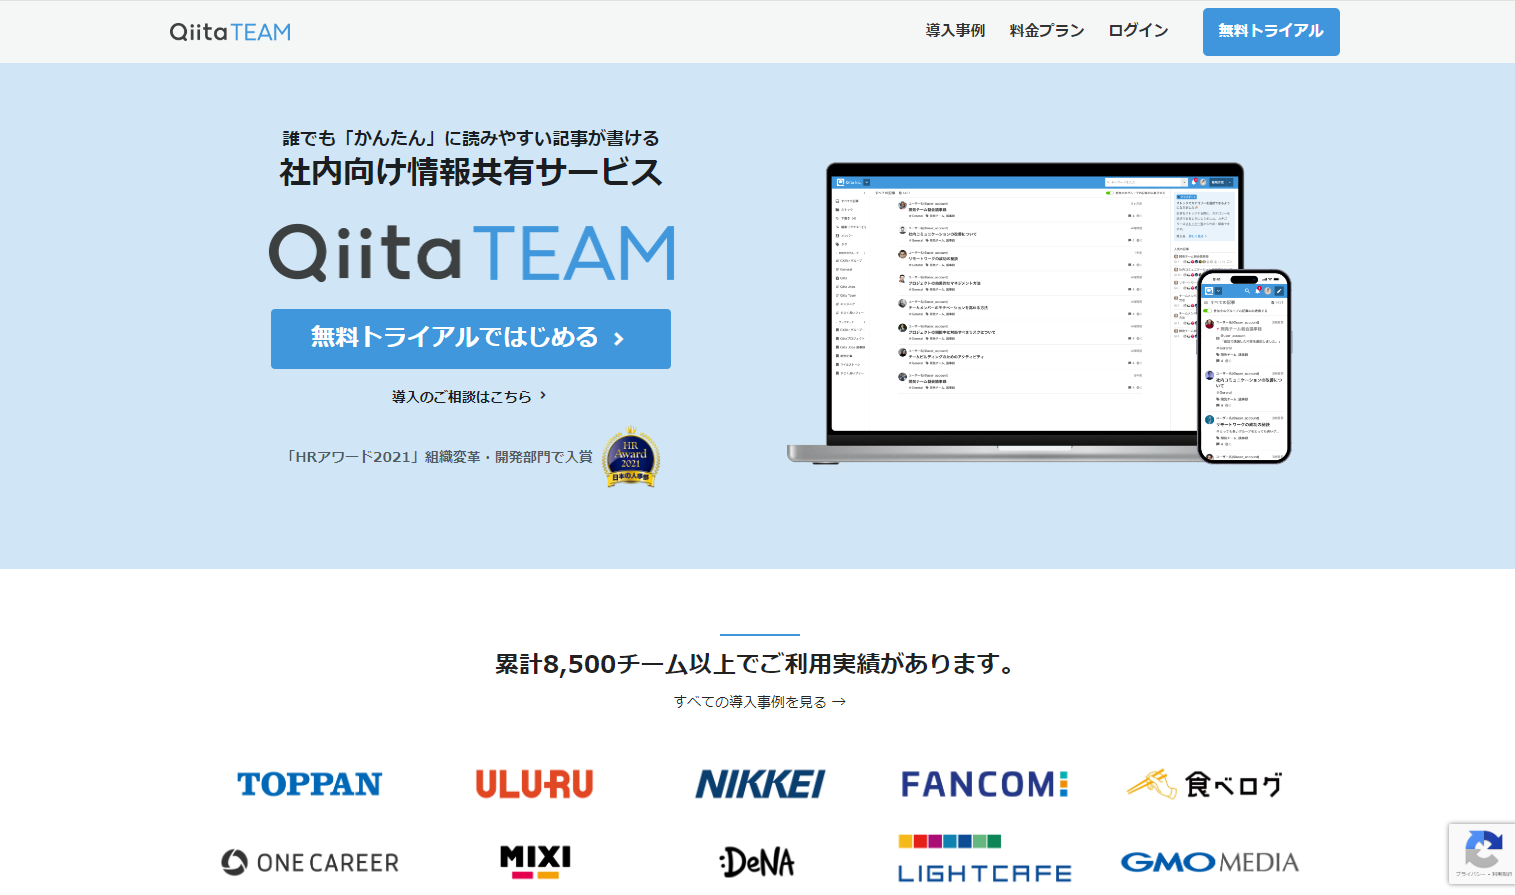 Qiita:Teamのトップページ画像